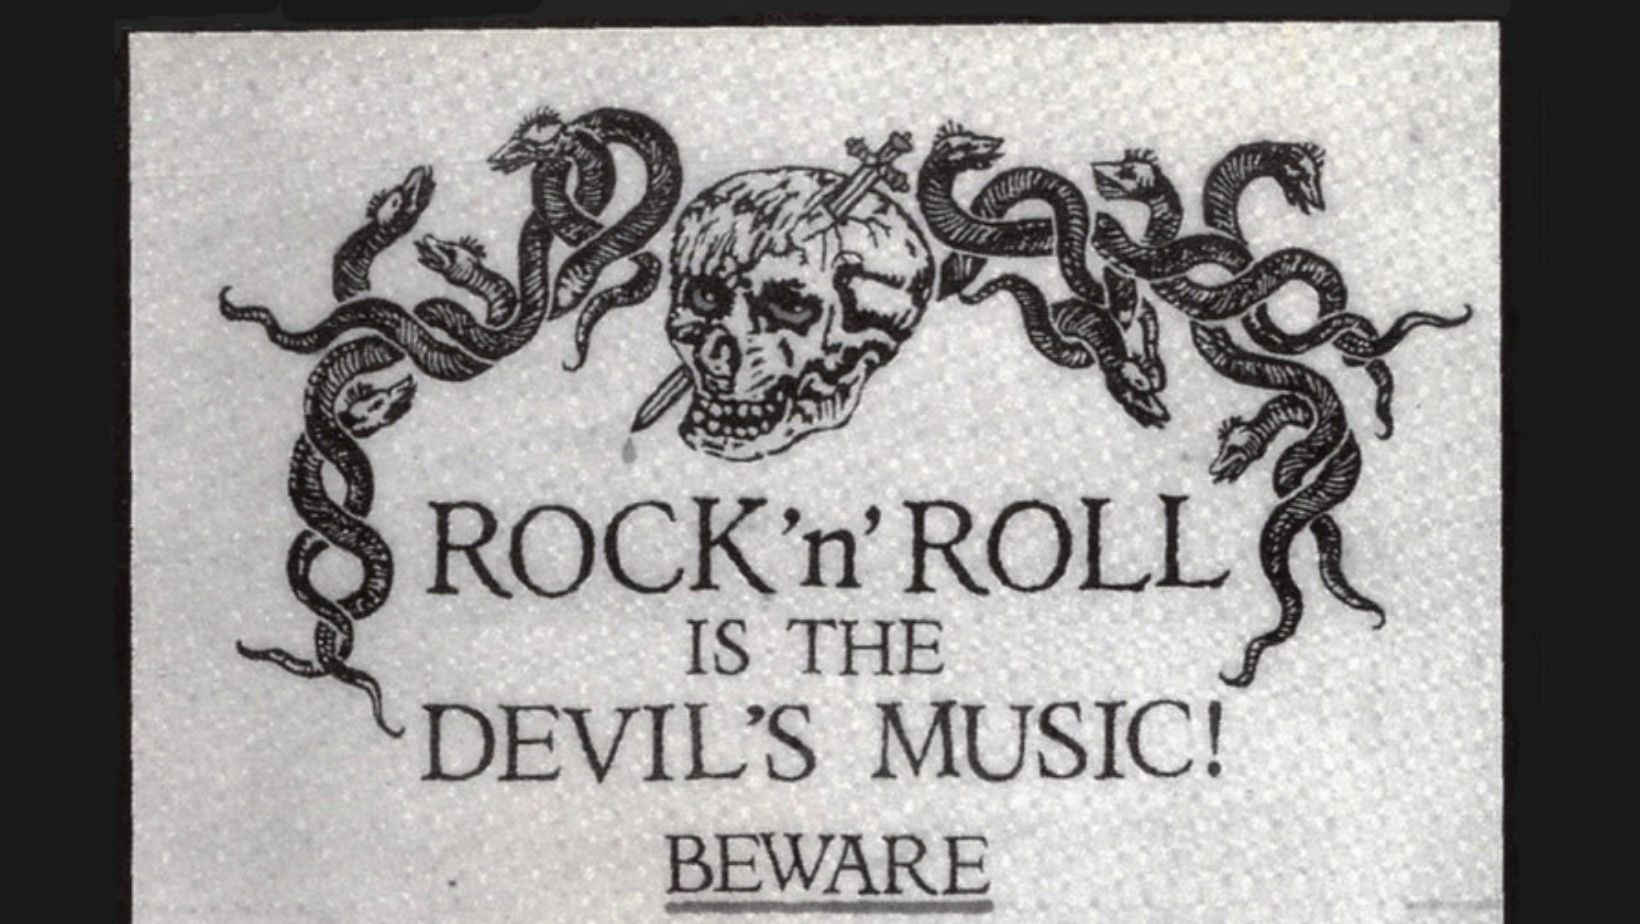 The Devil in Music